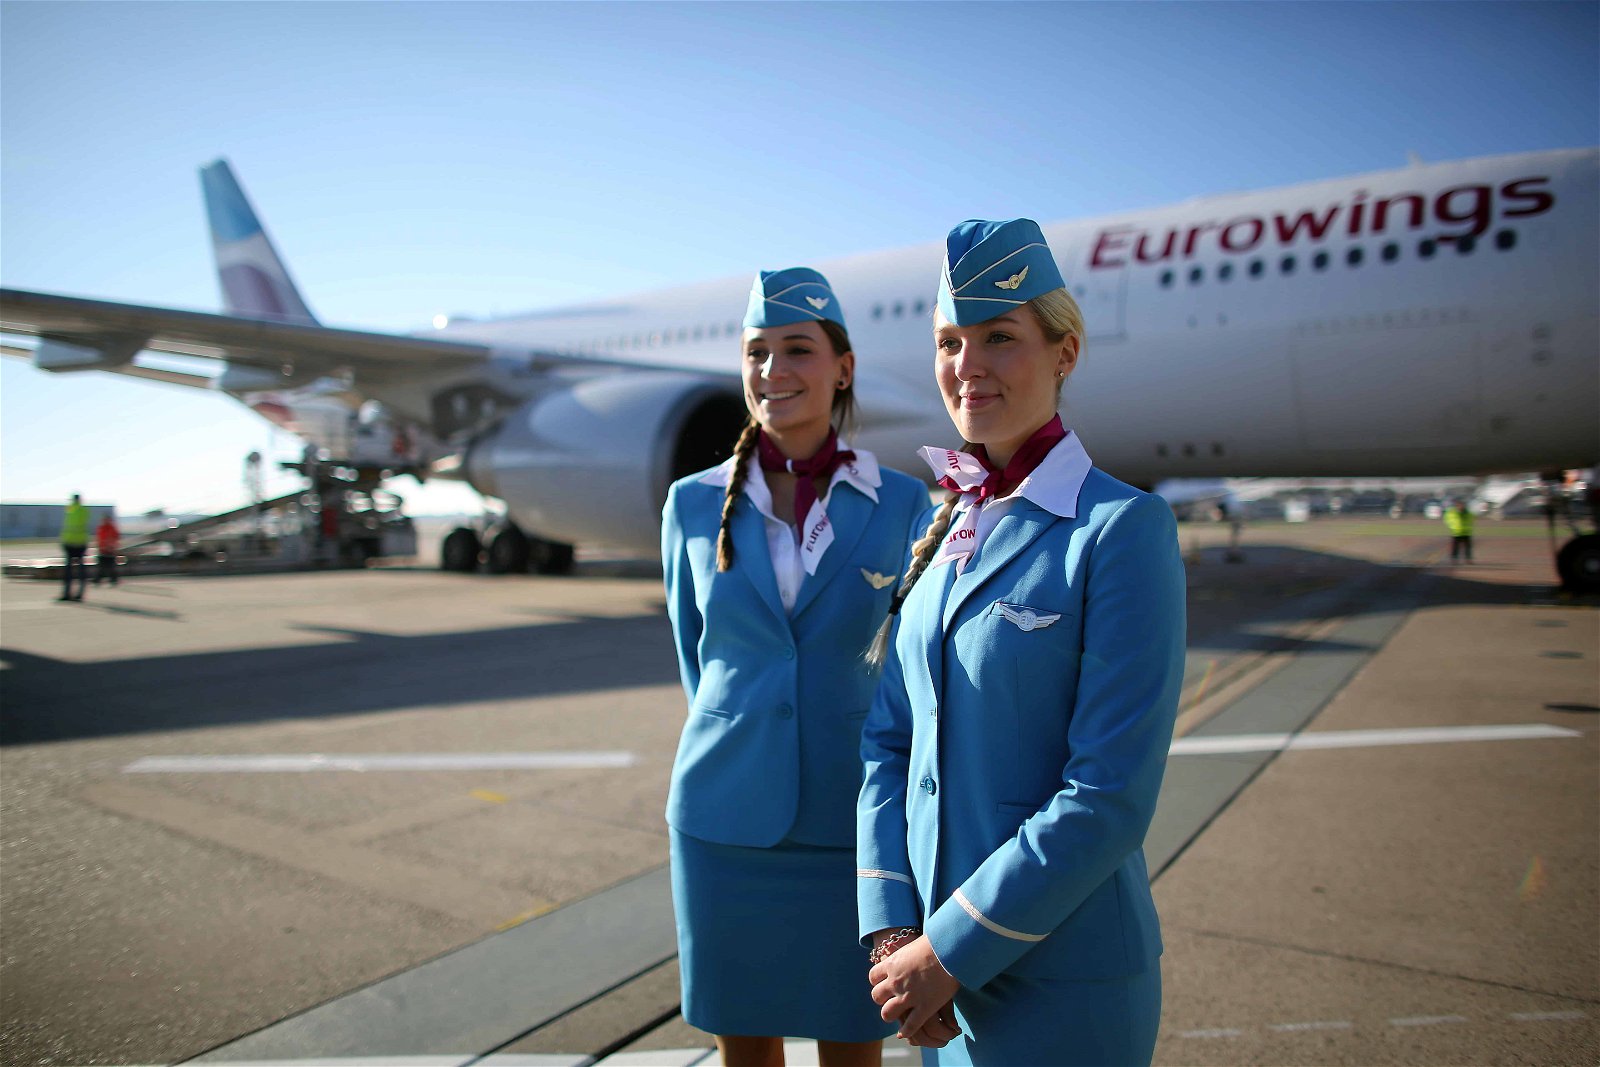 Twee stewardessen staan voor een vliegtuig van Eurowings.